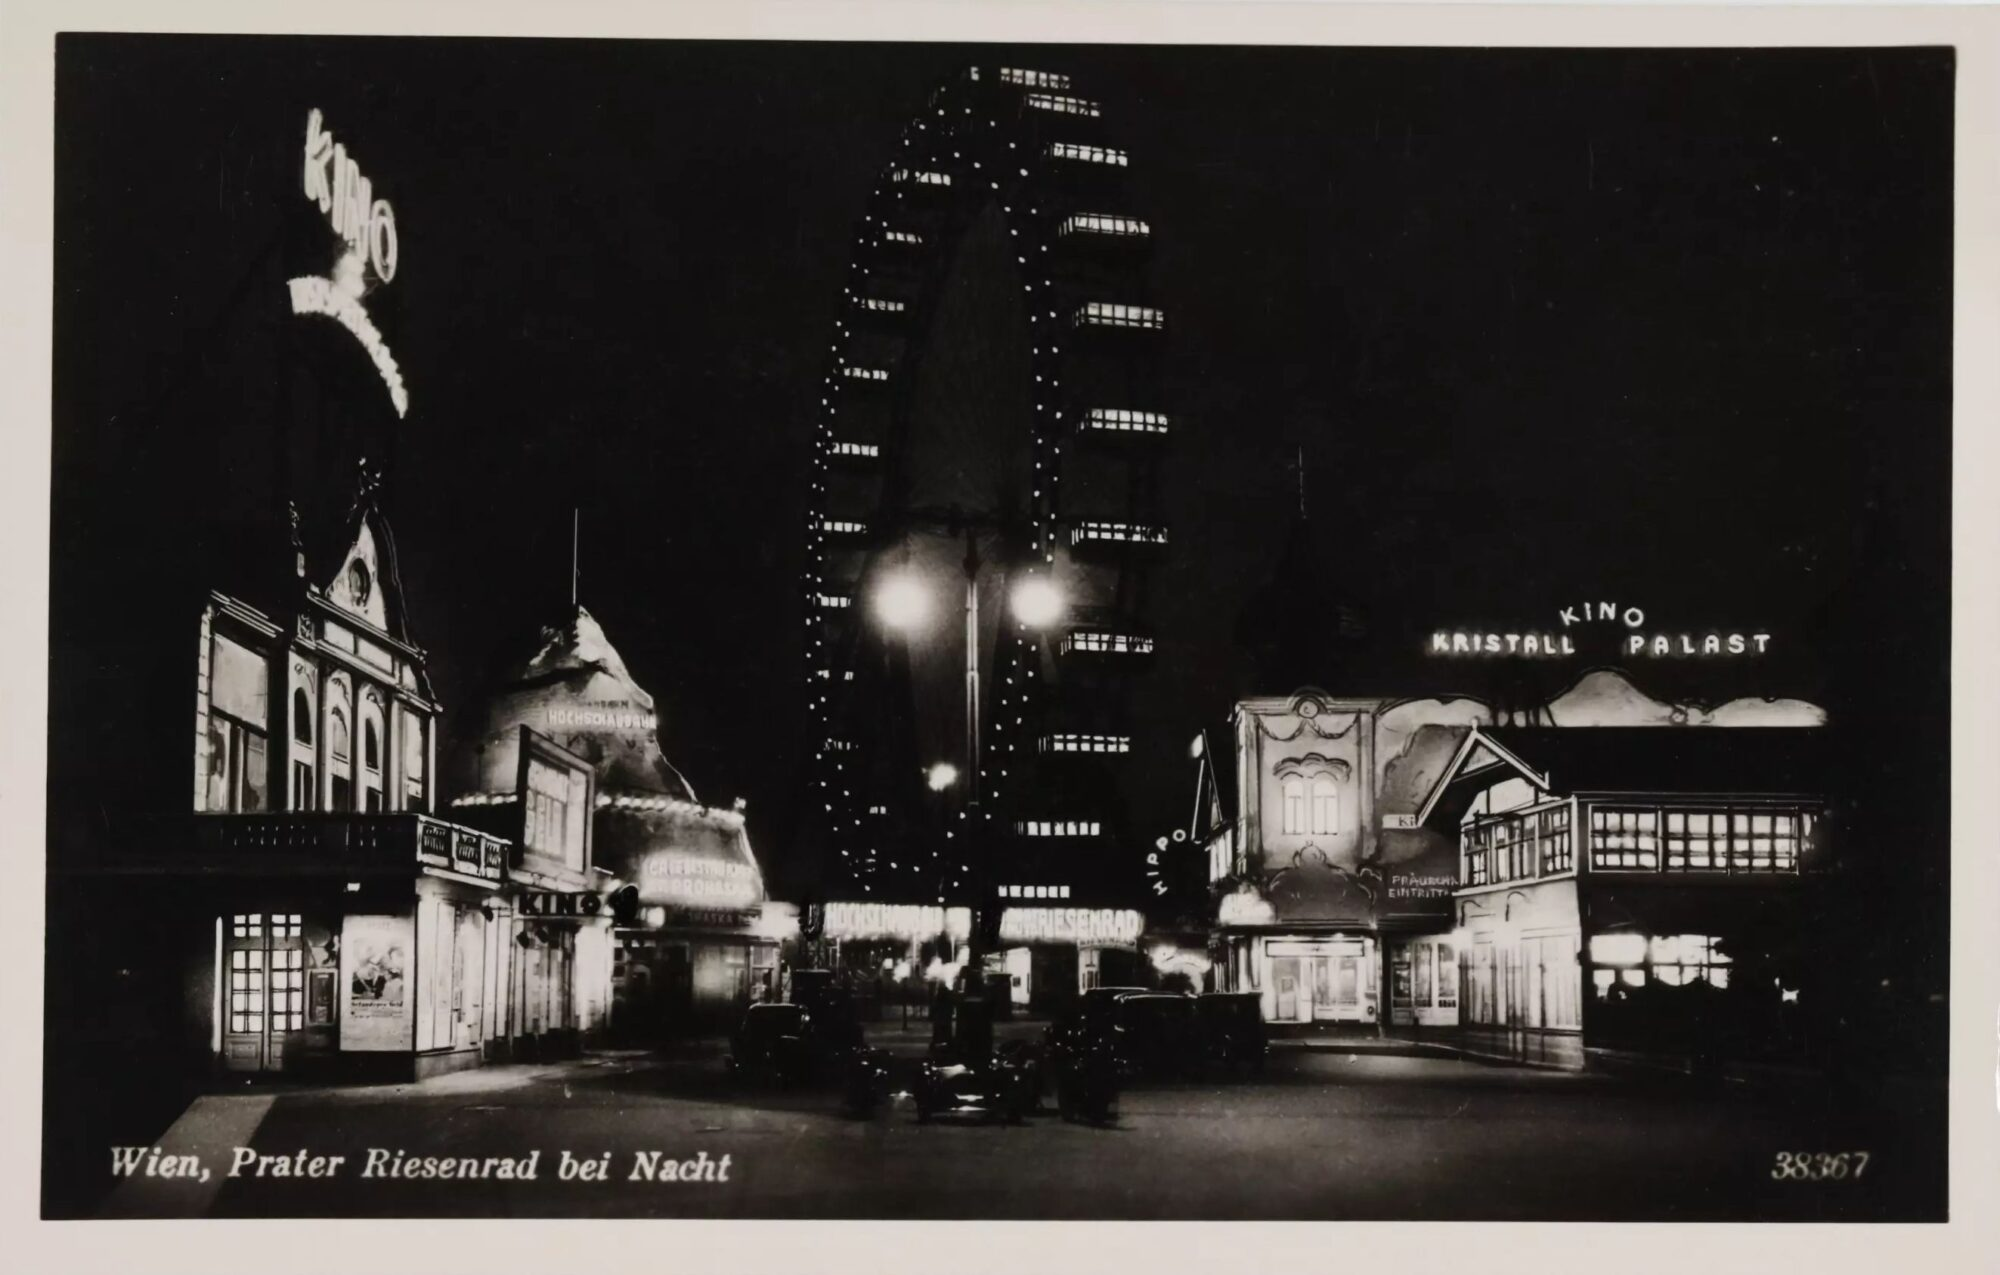 (c)Foto: Unbekannt, Wien, Prater Riesenrad bei Nacht, um 1935/Wien Museum